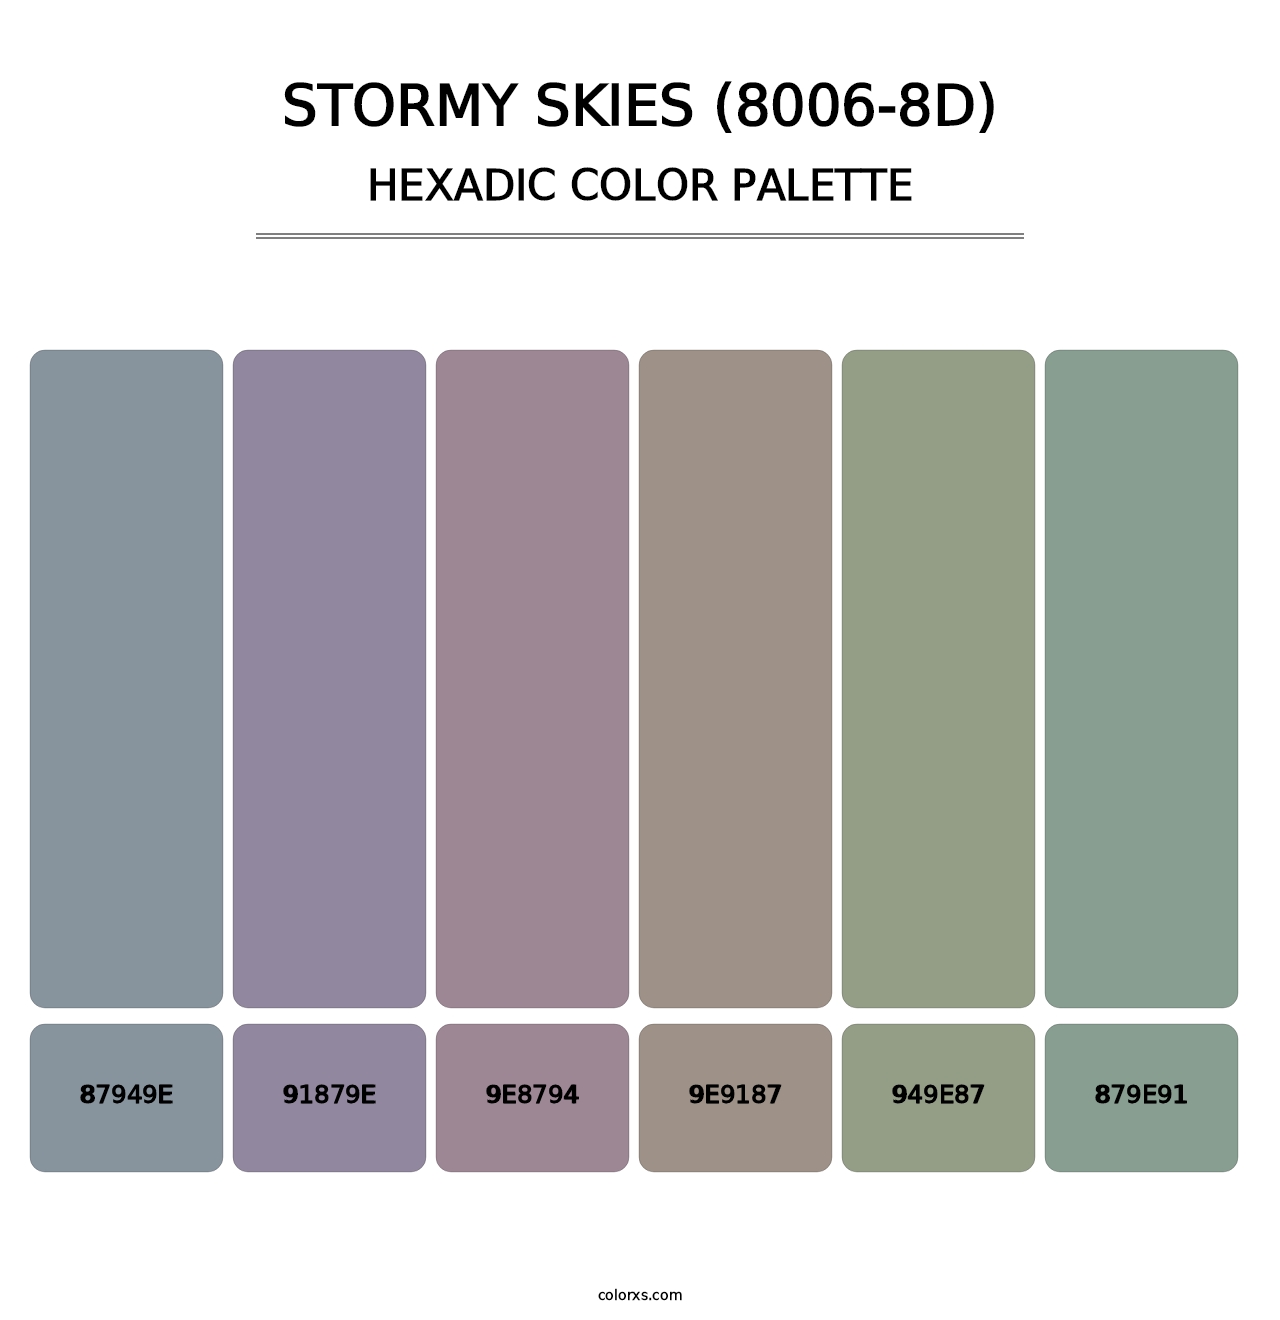 Stormy Skies (8006-8D) - Hexadic Color Palette